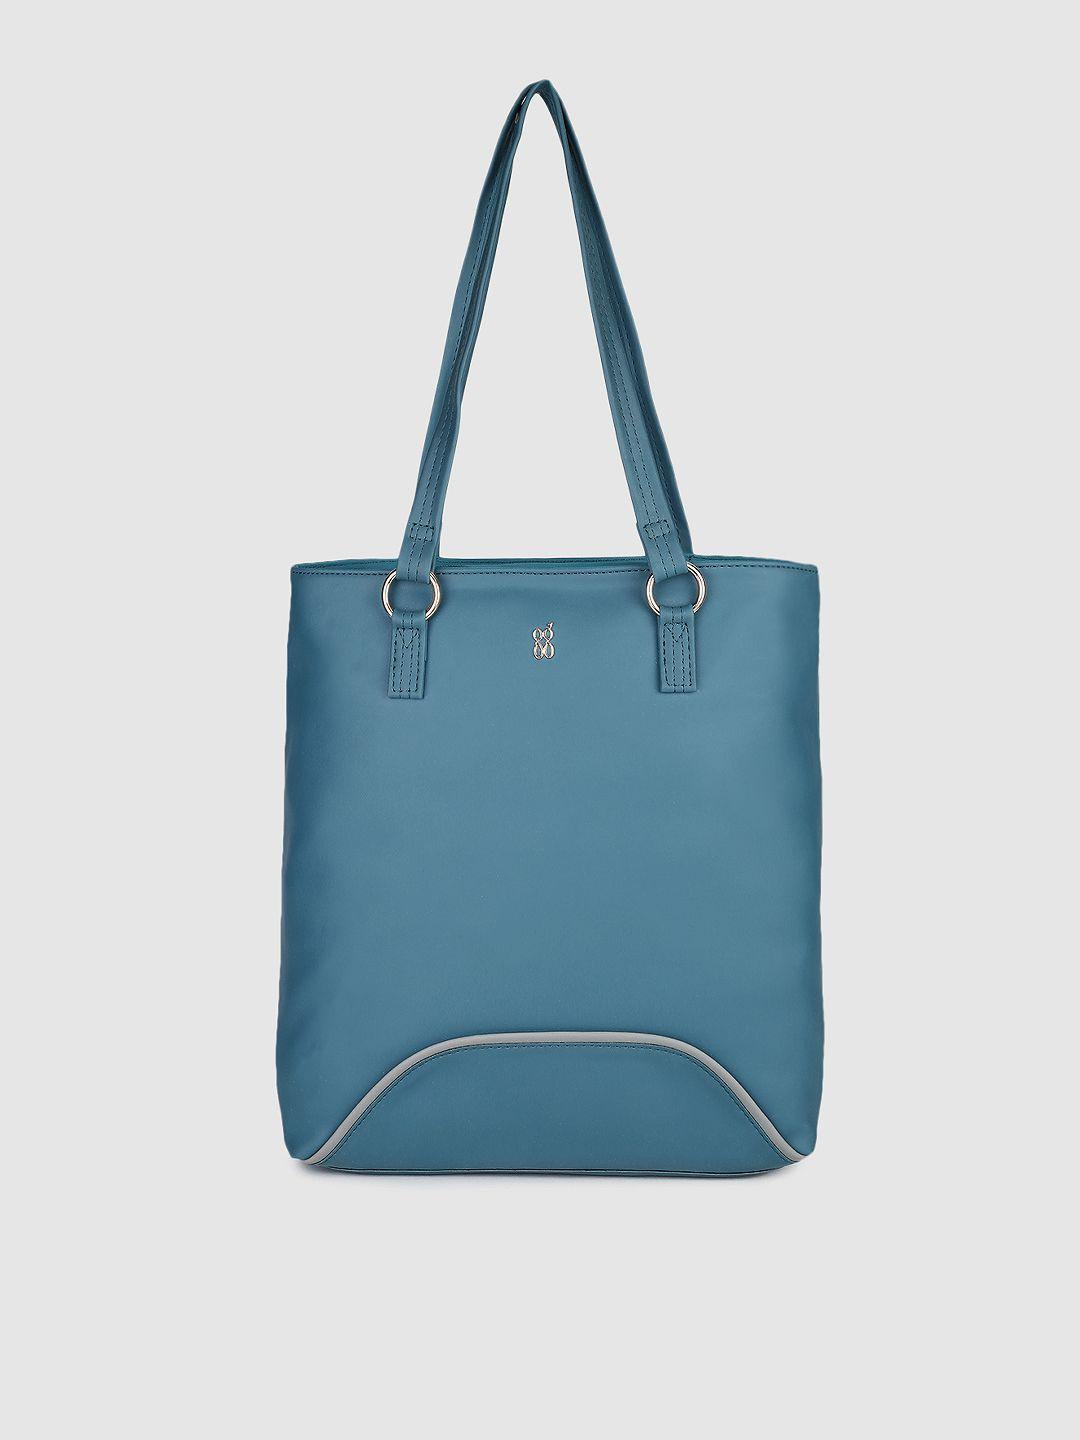 baggit teal blue solid shoulder bag